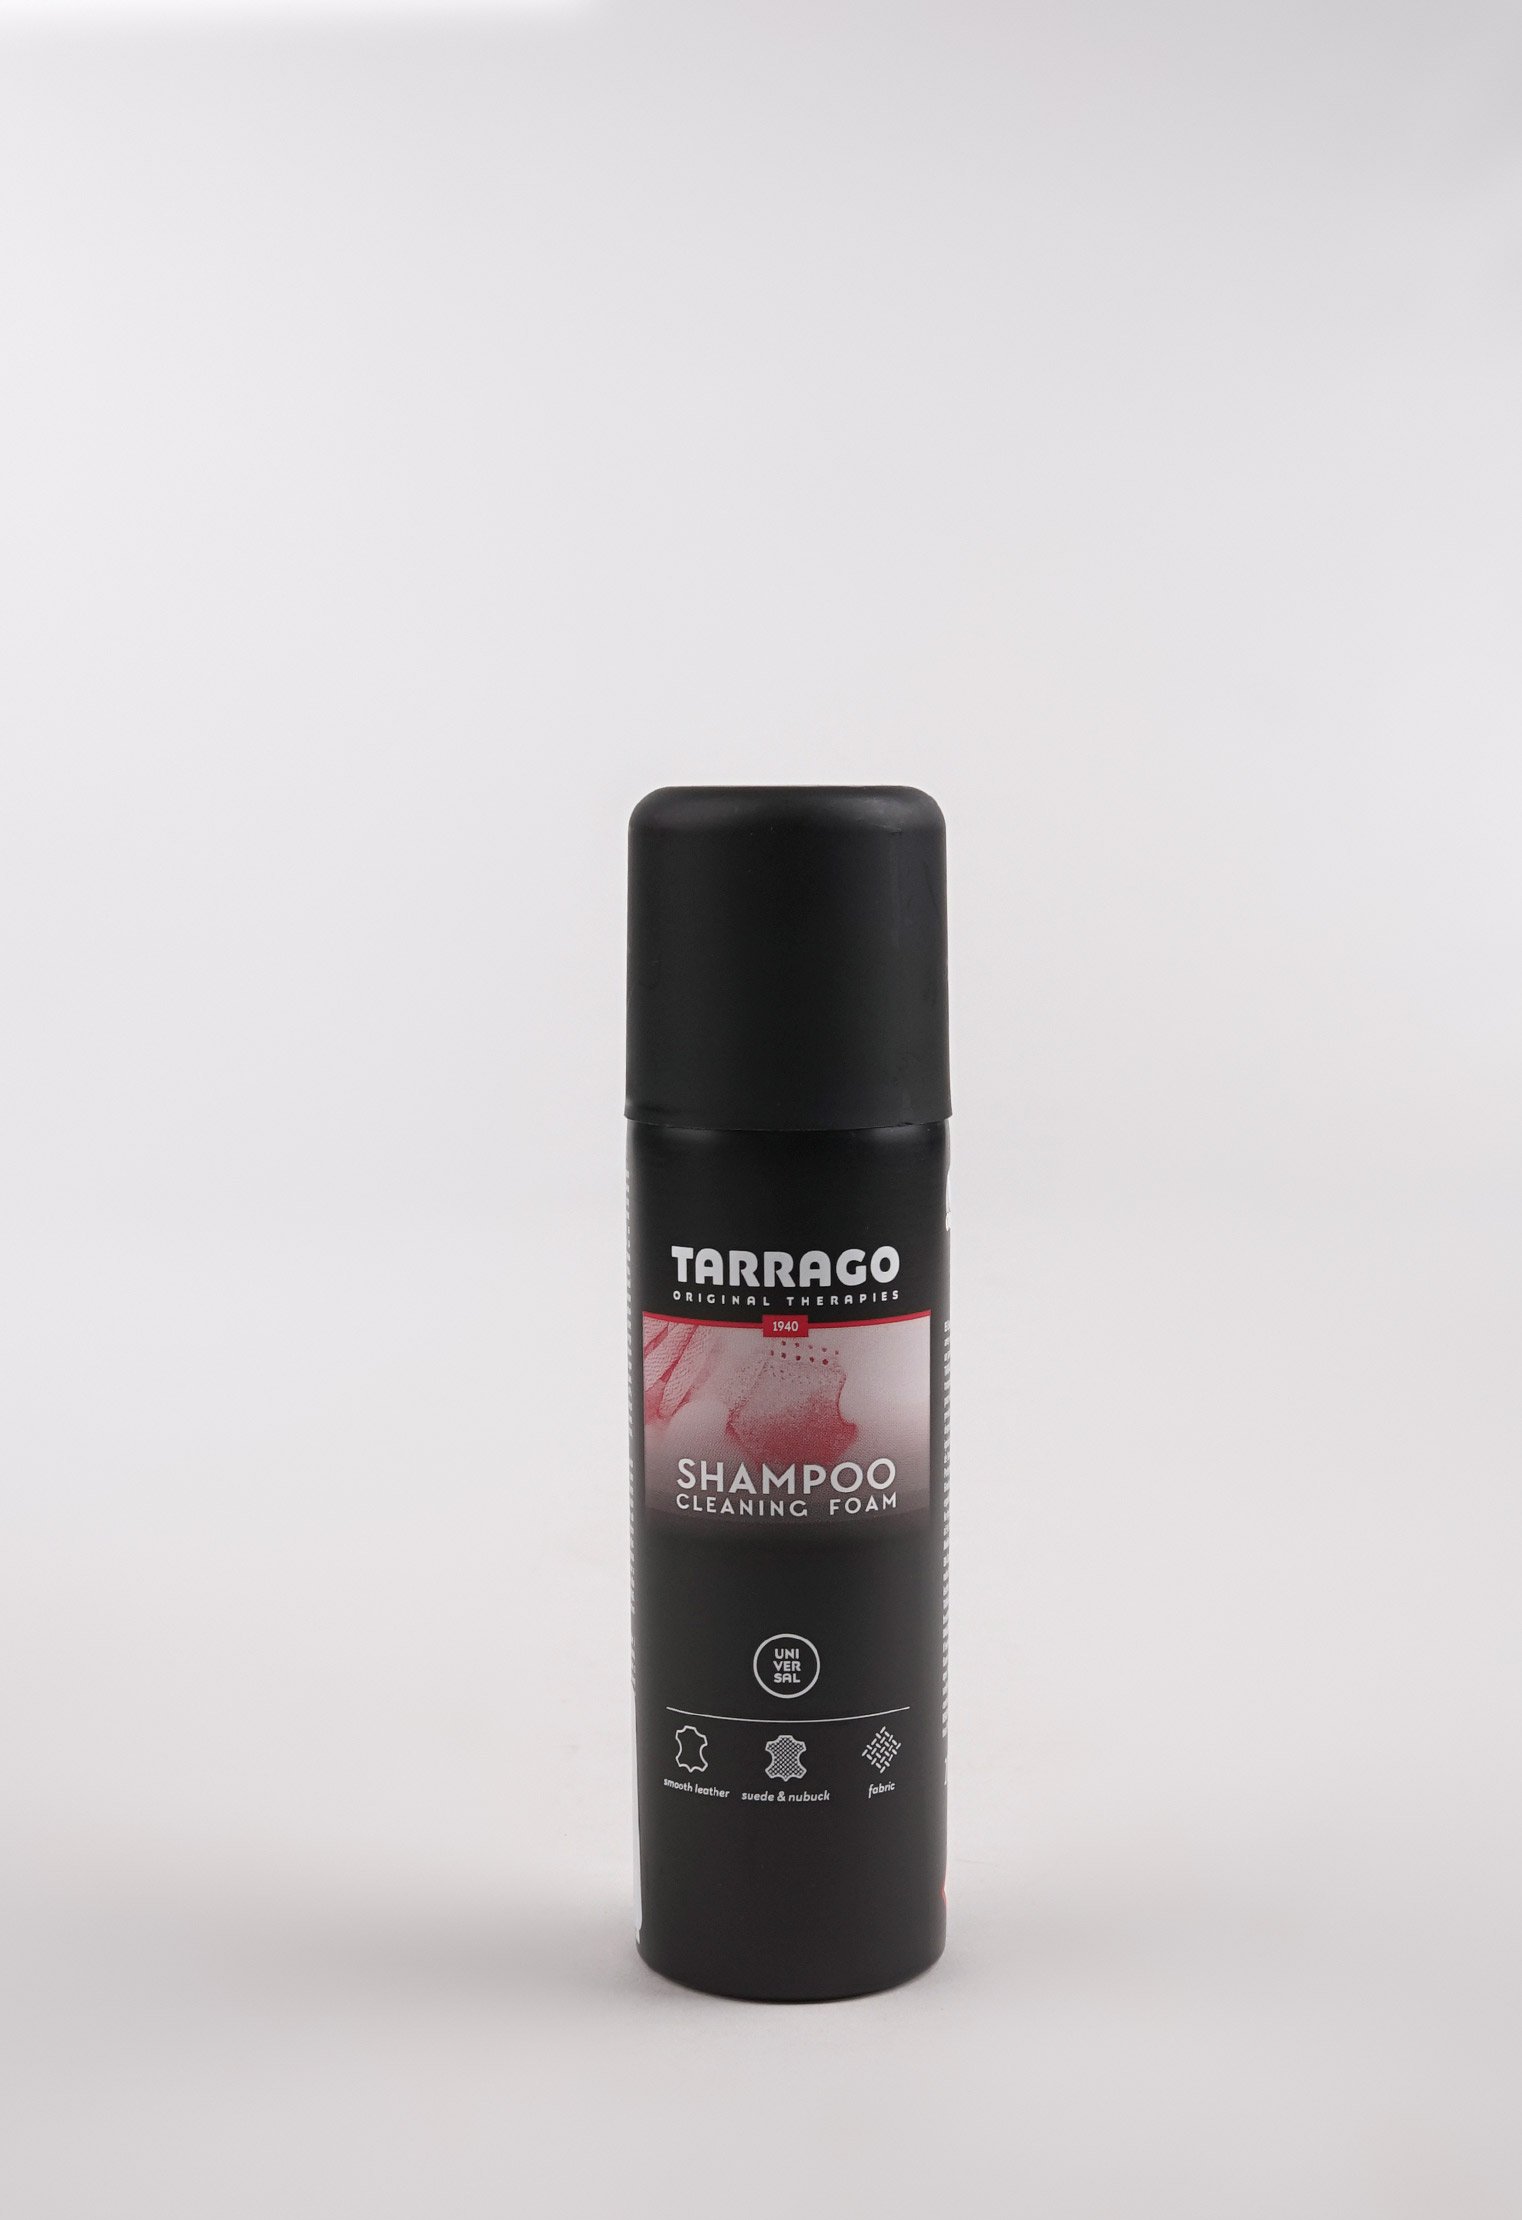 Шампуни и очистители 20-1068 TARRAGO - Пена-шампунь SHAMPOO, 200мл. пена очиститель для кожи замши нубука текстиля tarrago shampoo 200 мл